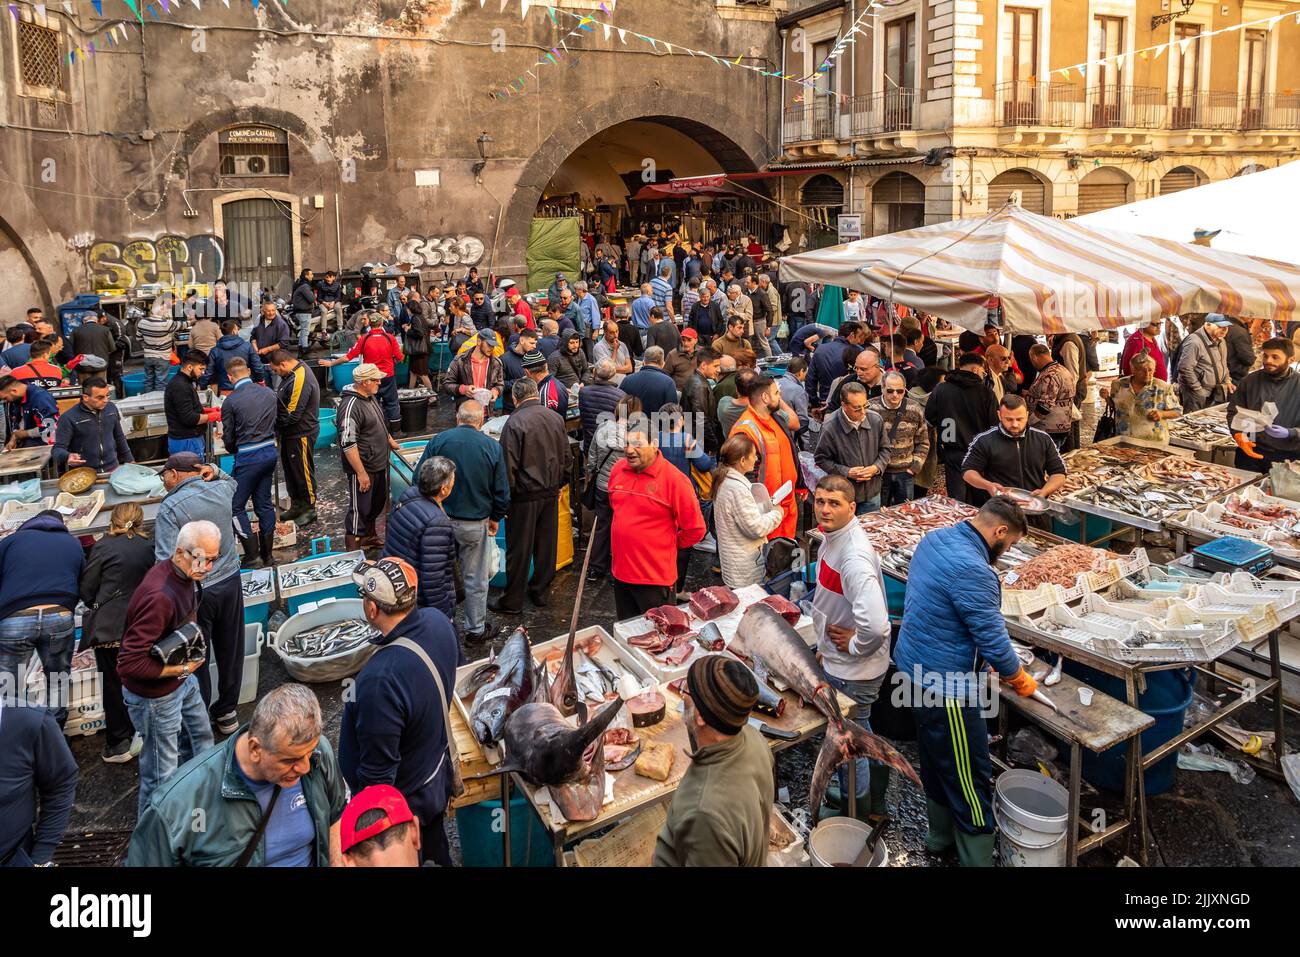 Catania, Italy - May 11, 2019: La Pescheria, the famous historical fish market in Catania, Sicily. Stock Photo